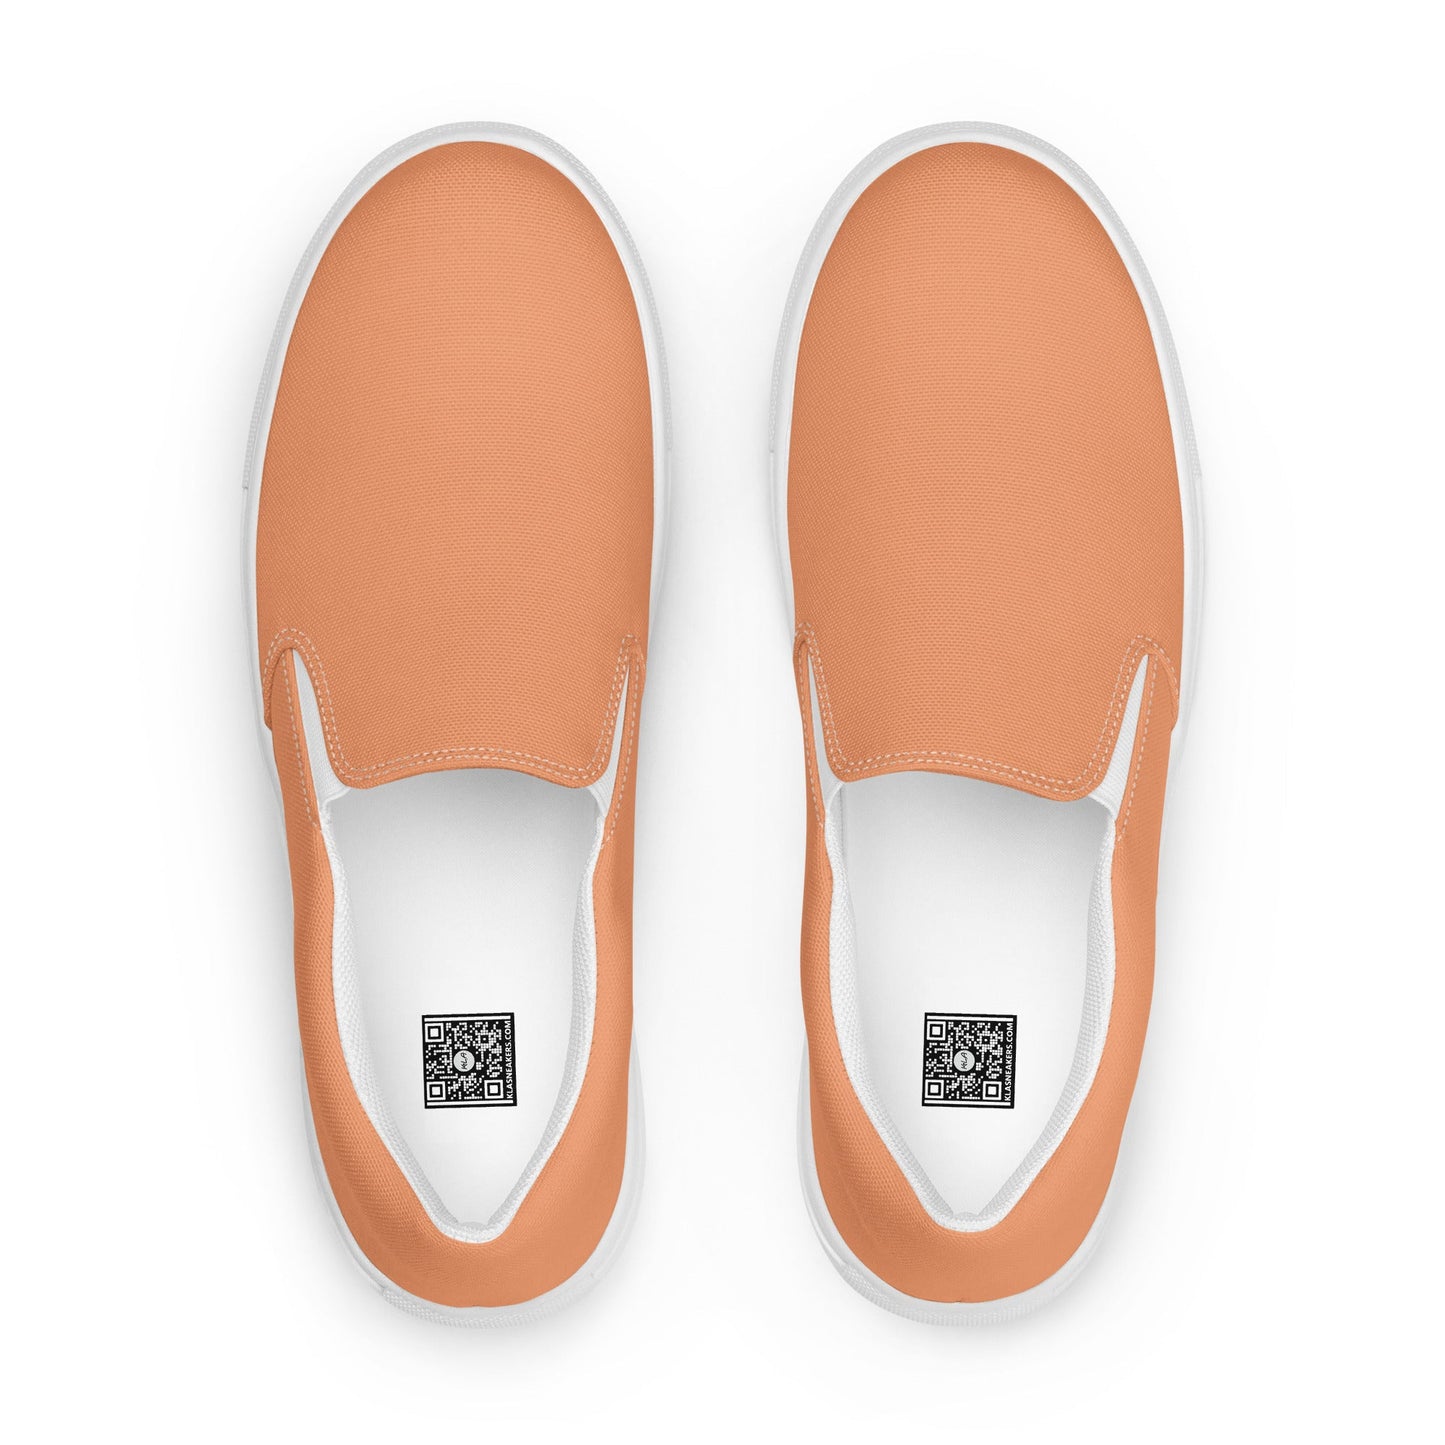 klasneakers Men’s slip-on canvas shoes - Peach